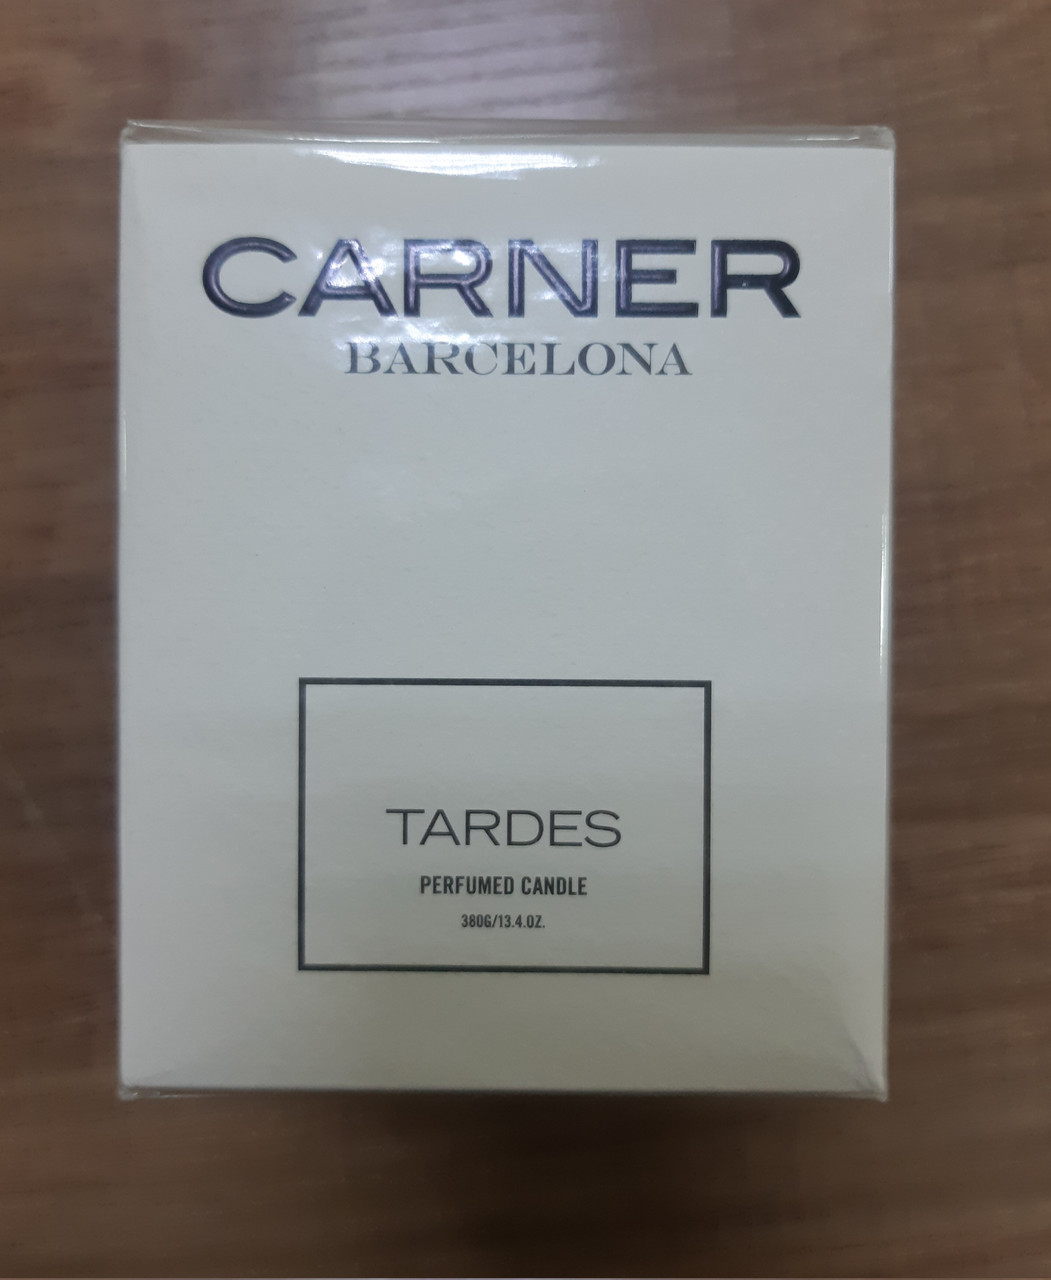 Carner Barcelona Tardes Perfumed Candle 380gr